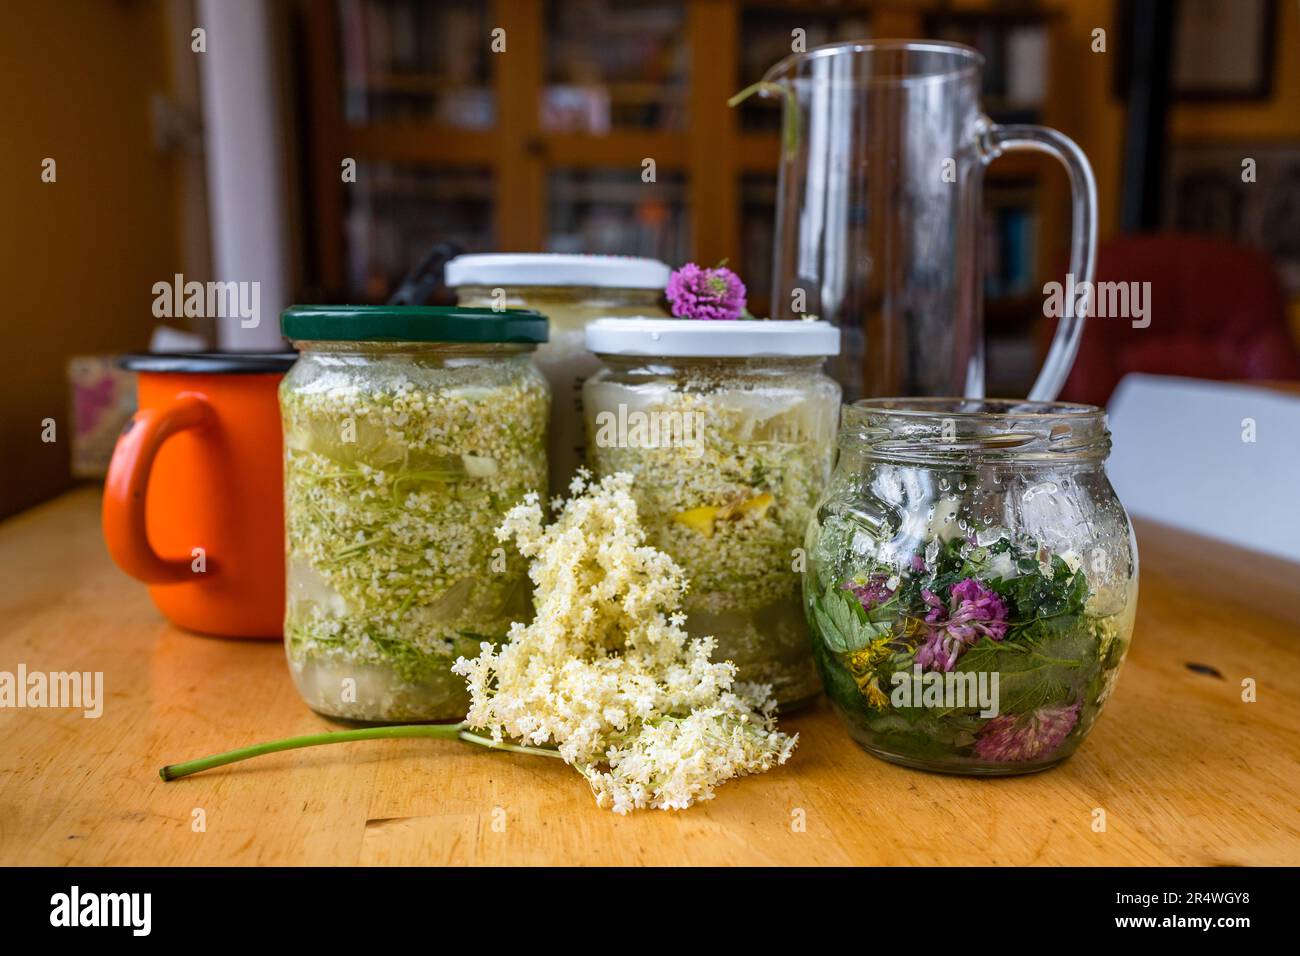 Preparazione dello sciroppo di fiore d'anziano fiorito in bottiglie, caraffa e vasetto sul tavolo. Foto Stock